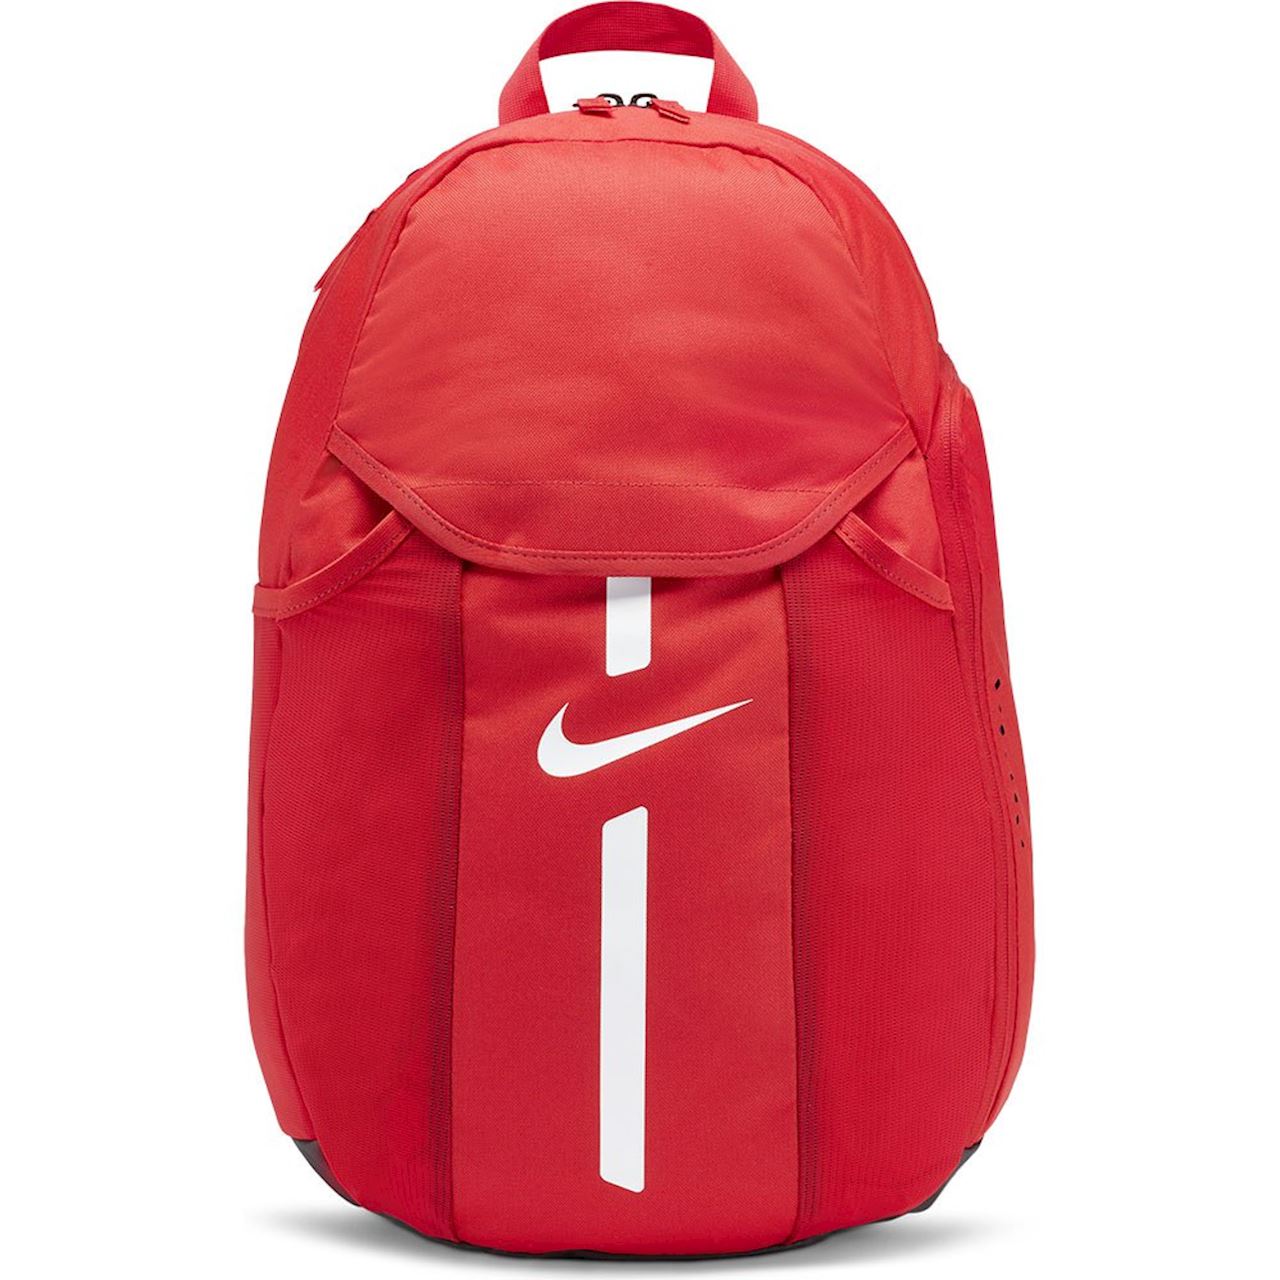 Рюкзак мужской Nike Academy Team красный, 50x35x15 см